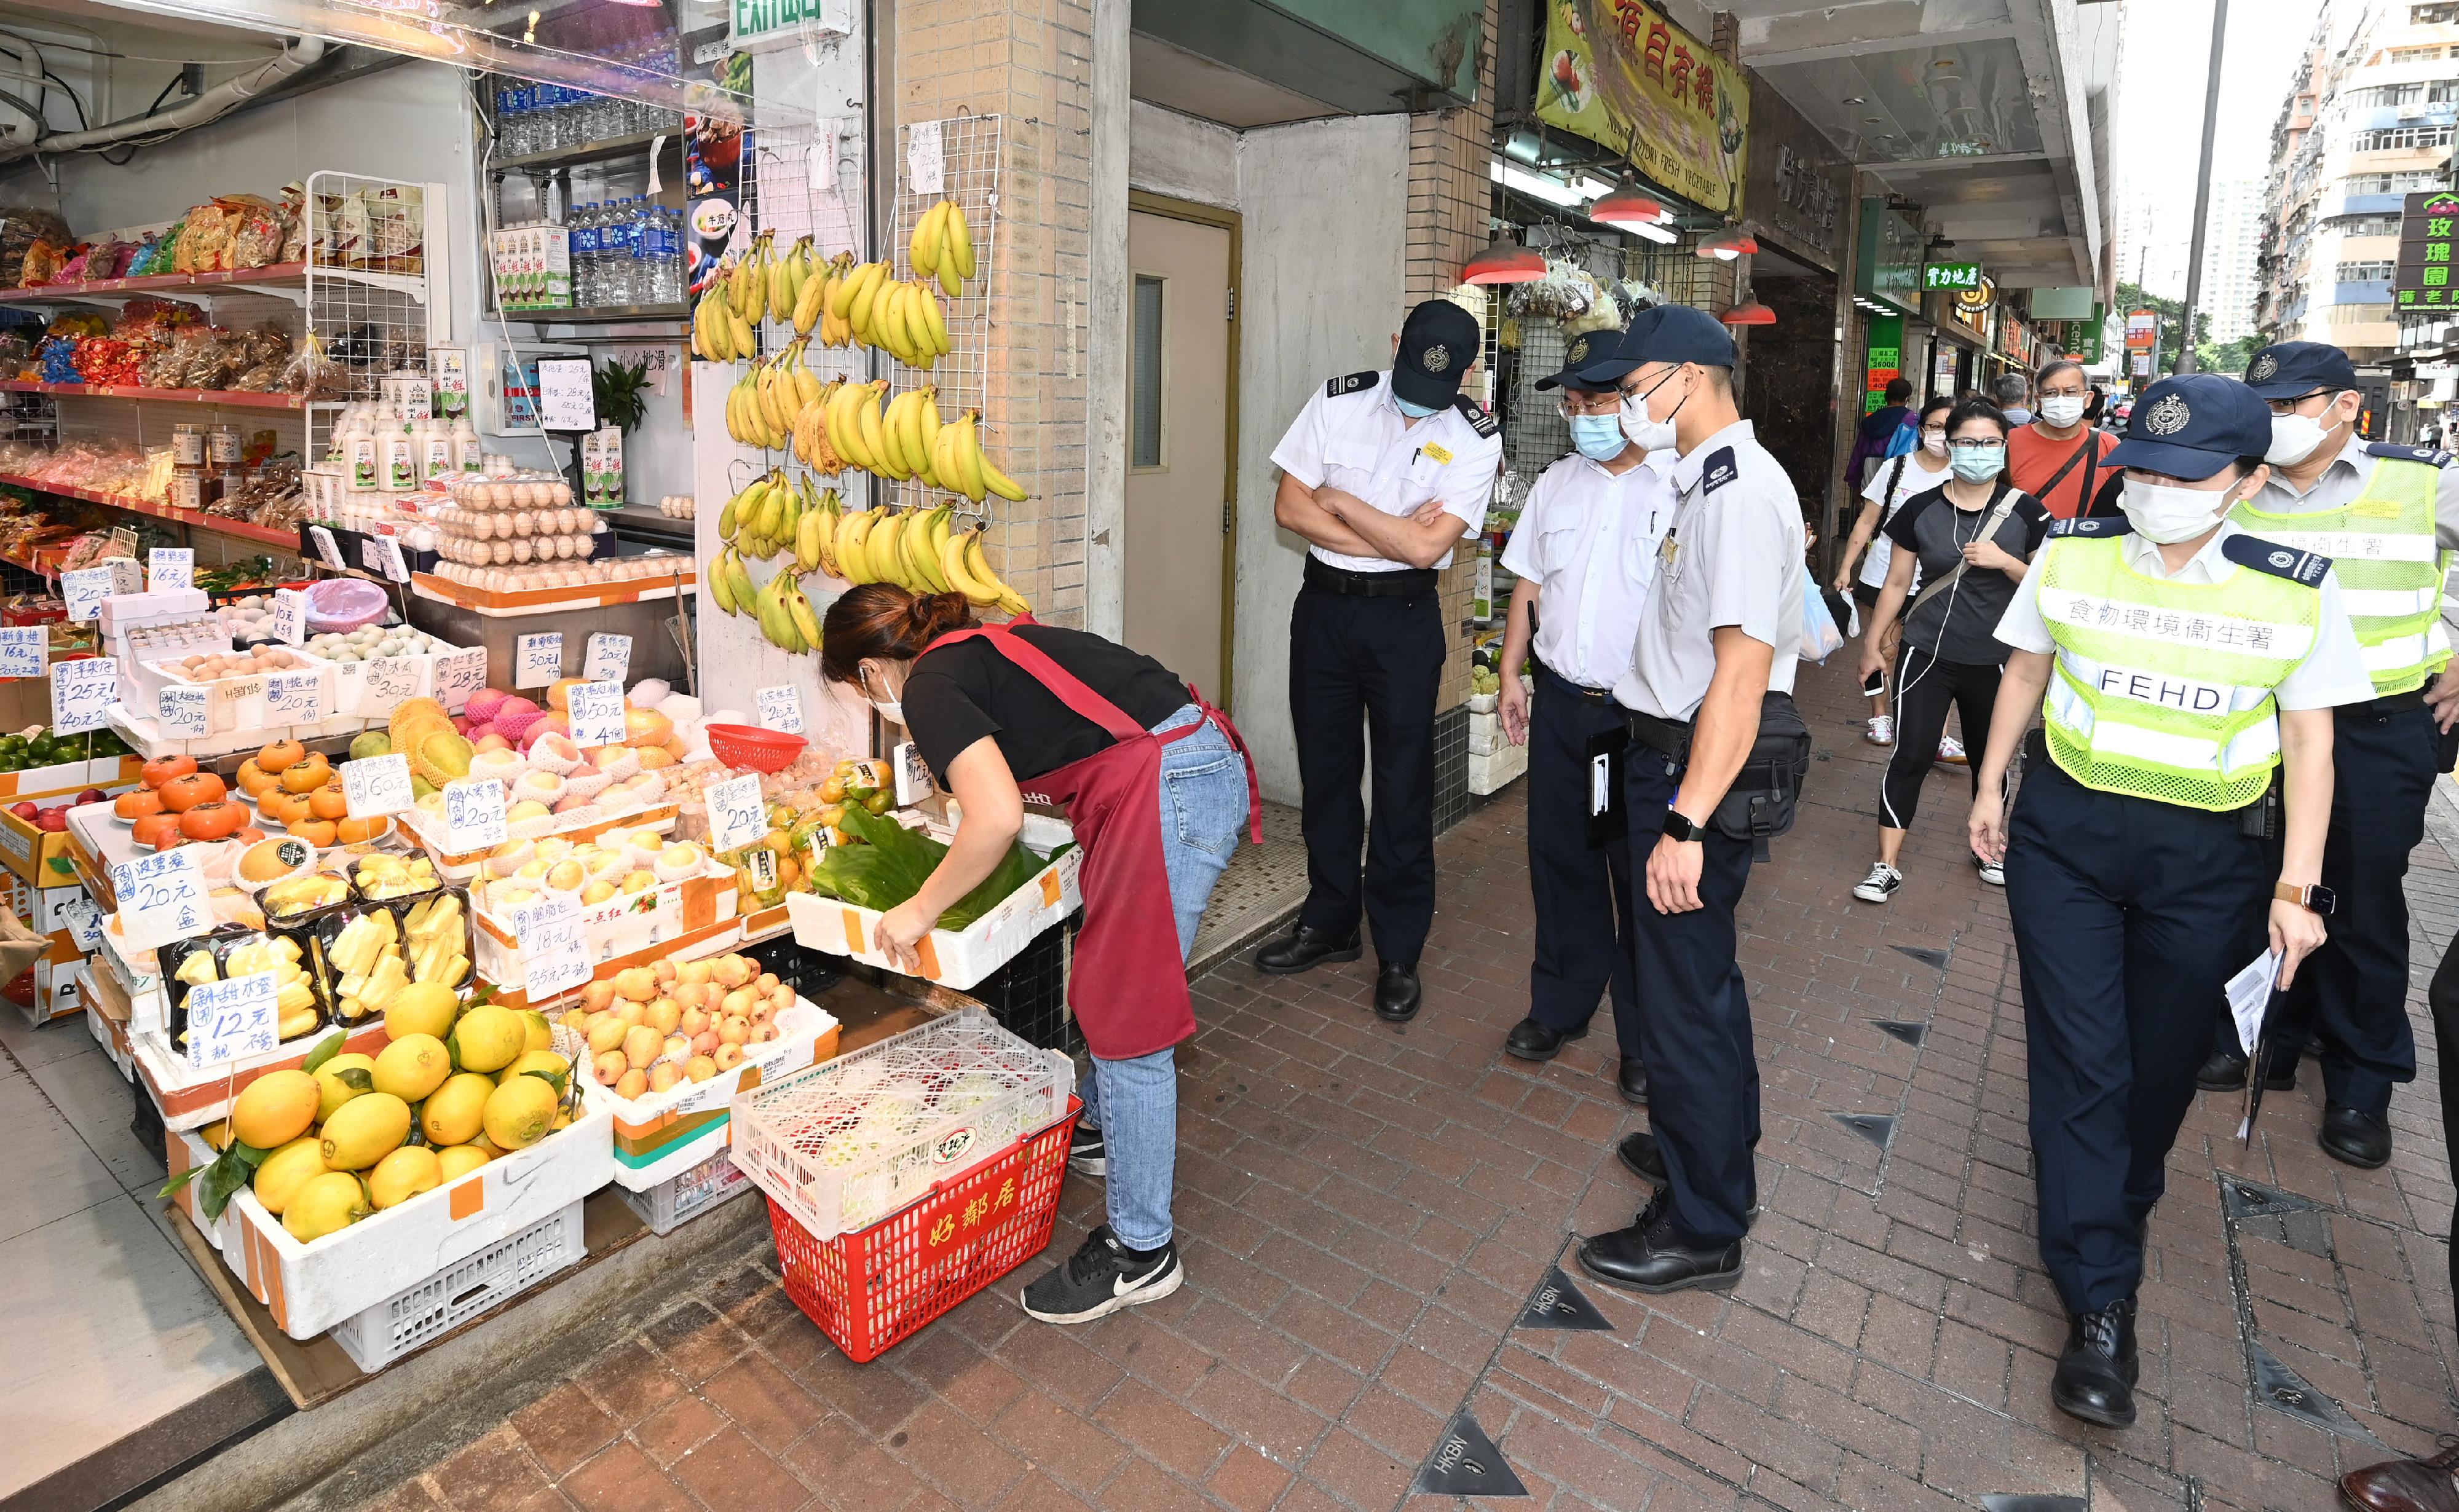 食物环境卫生署（食环署）发言人今日（十月二十四日）表示，食环署与香港警务处自十月三日起先后于各区展开连串严厉执法行动，打击非法店铺阻街活动。图示食环署人员早前于中西区采取行动。

